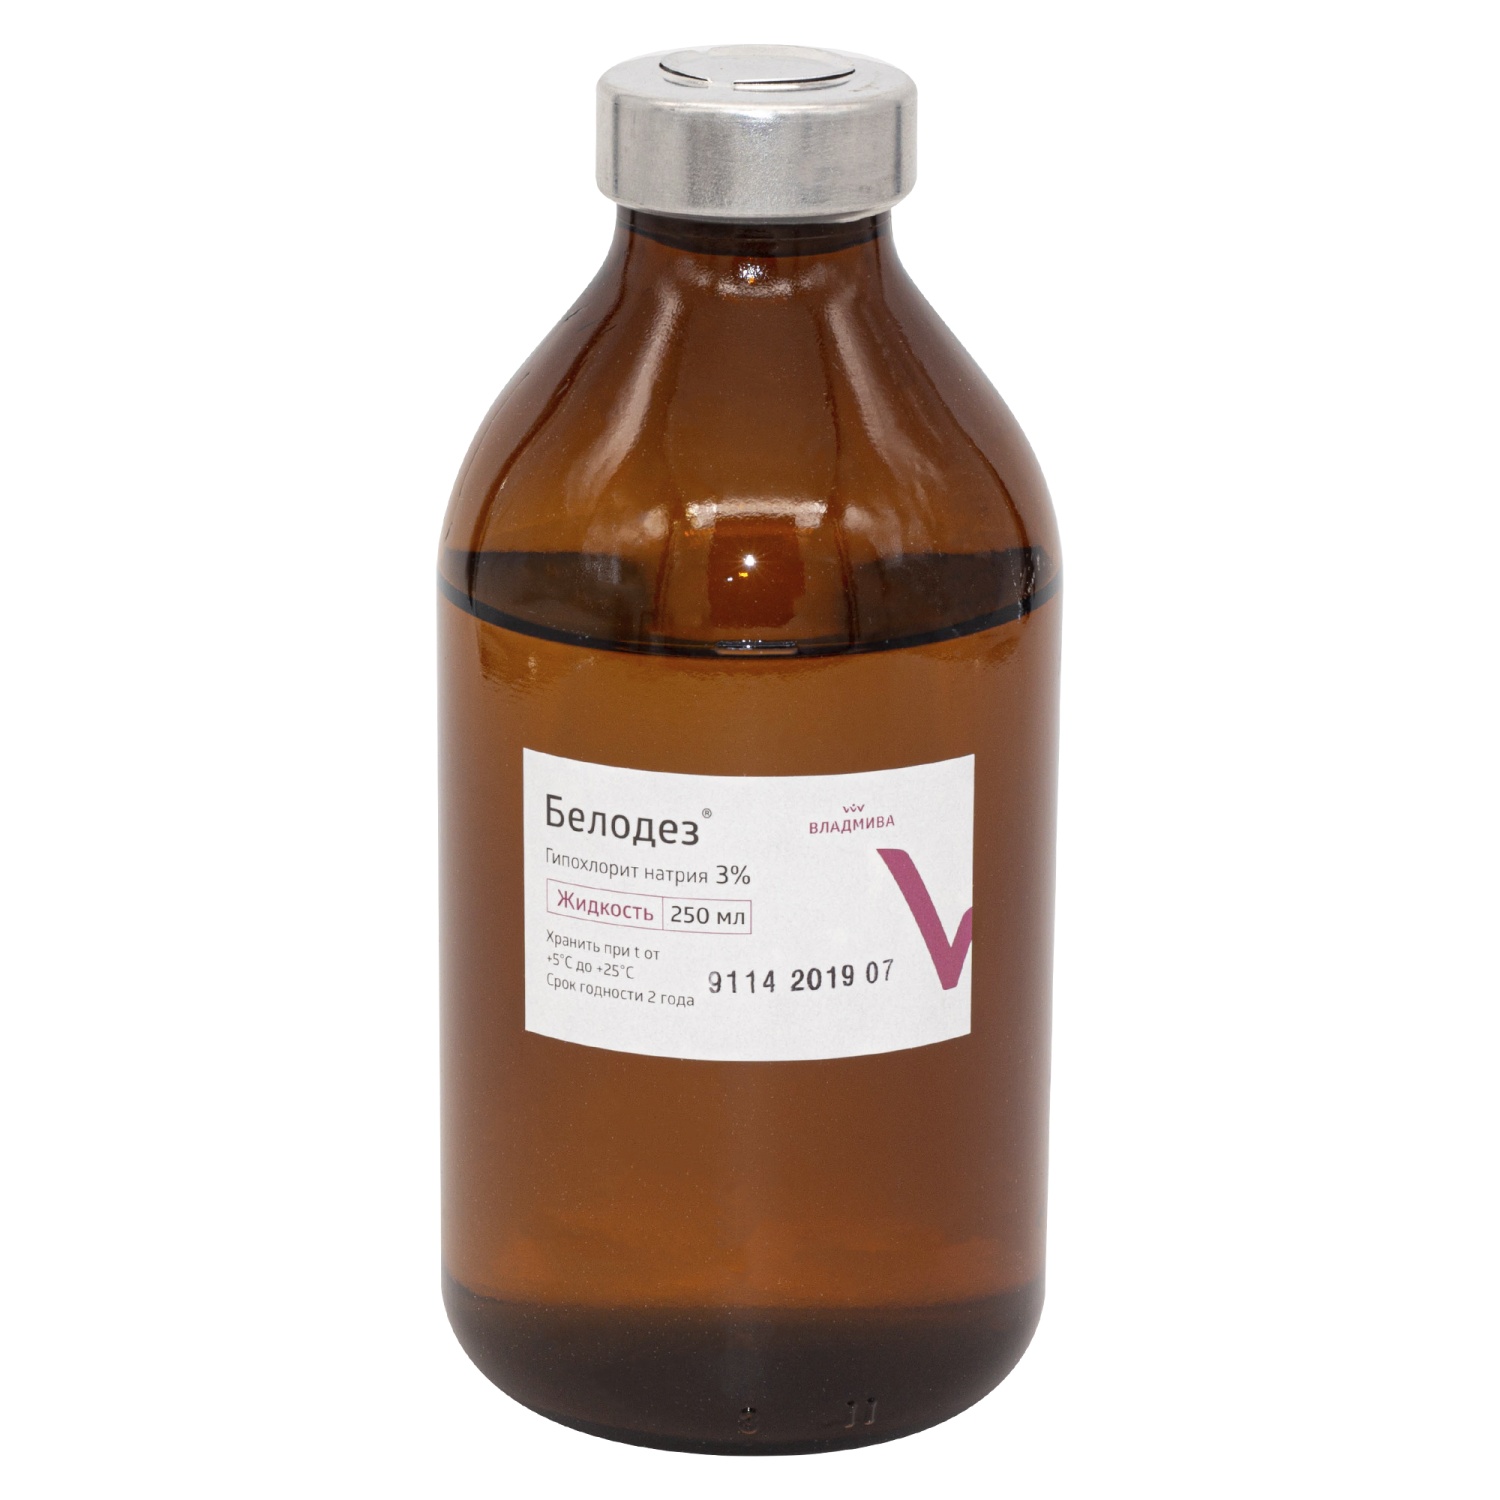 Белодез 3% гипохлорит Na (250мл.)/ВладМиВа